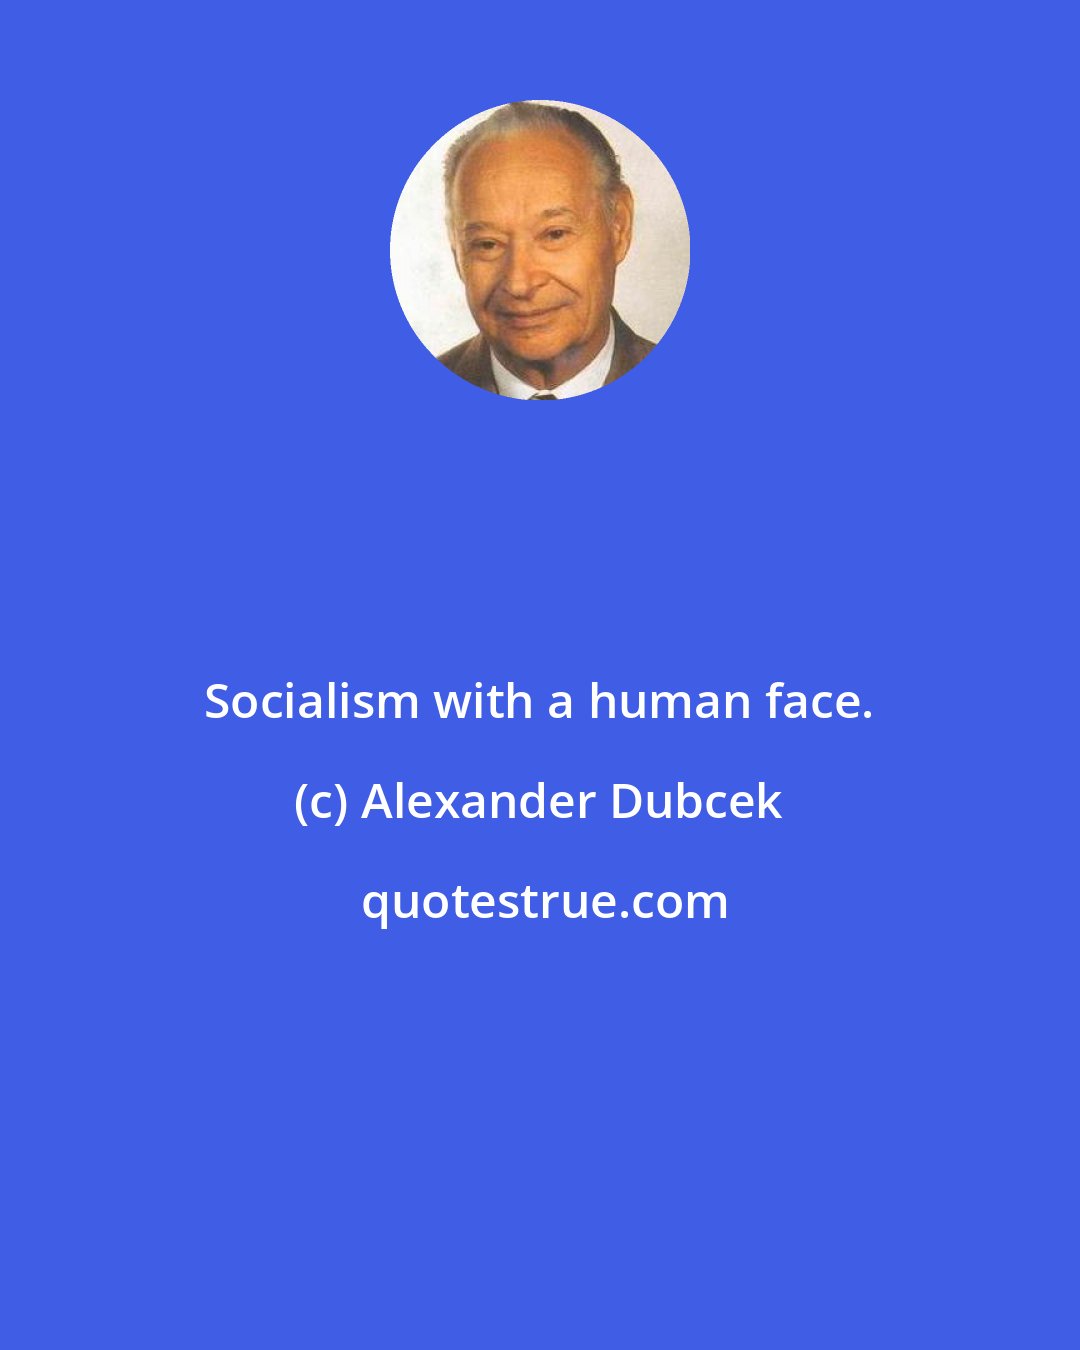 Alexander Dubcek: Socialism with a human face.